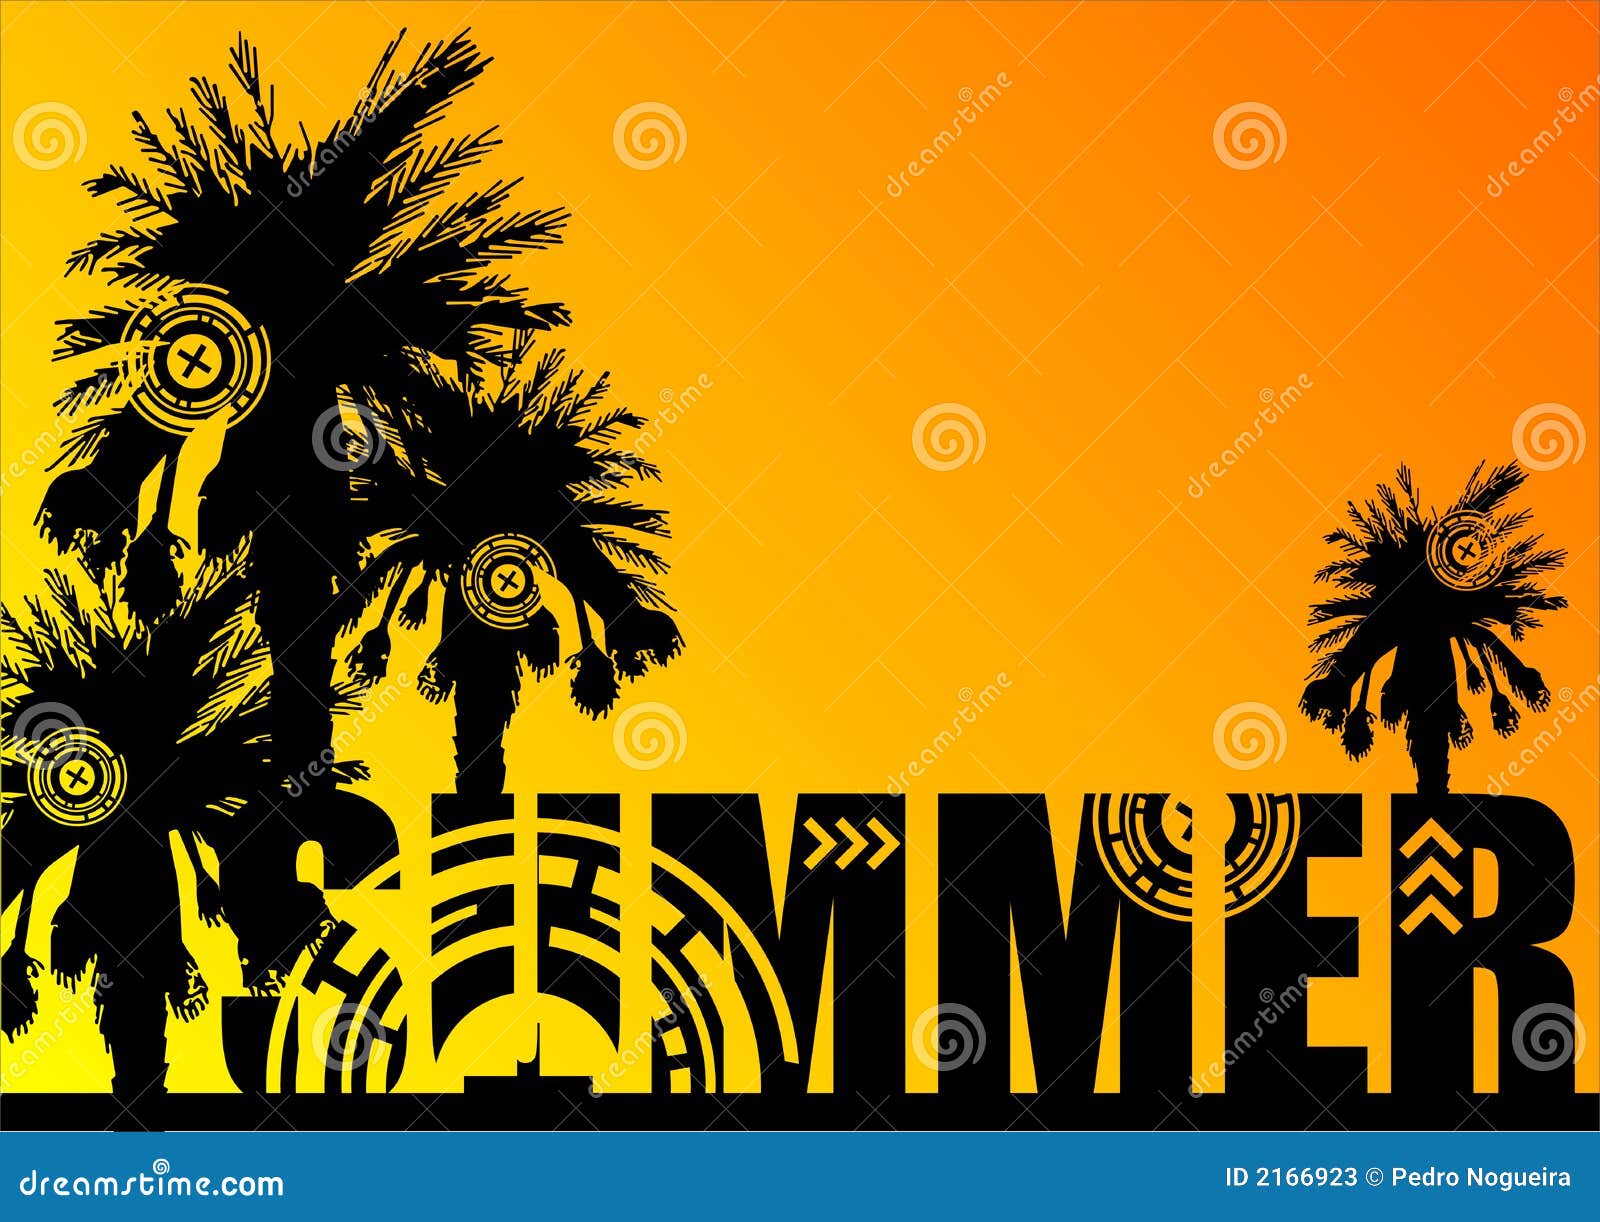 Summer_01. Palmeschattenbilder oben auf das Wort SOMMER über orange und gelbem Steigunghintergrund